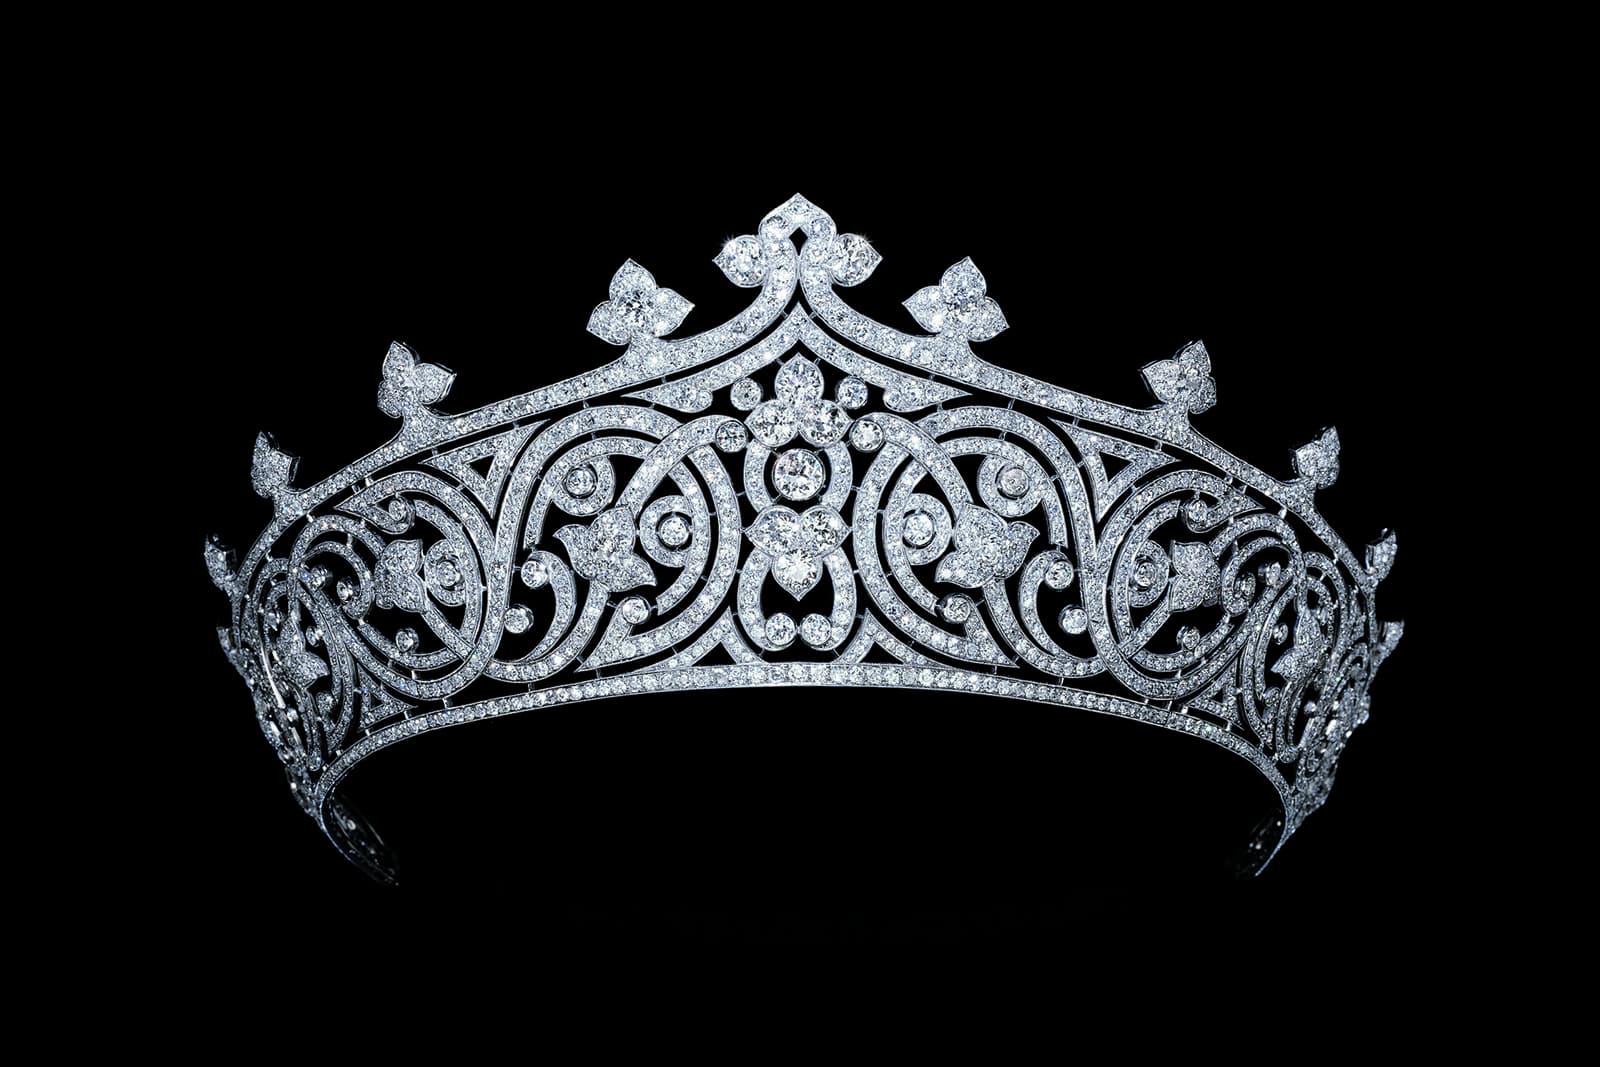 Fleuron-motif tiara belonging to Edwina, Countess Mountbatten of Burma, the...